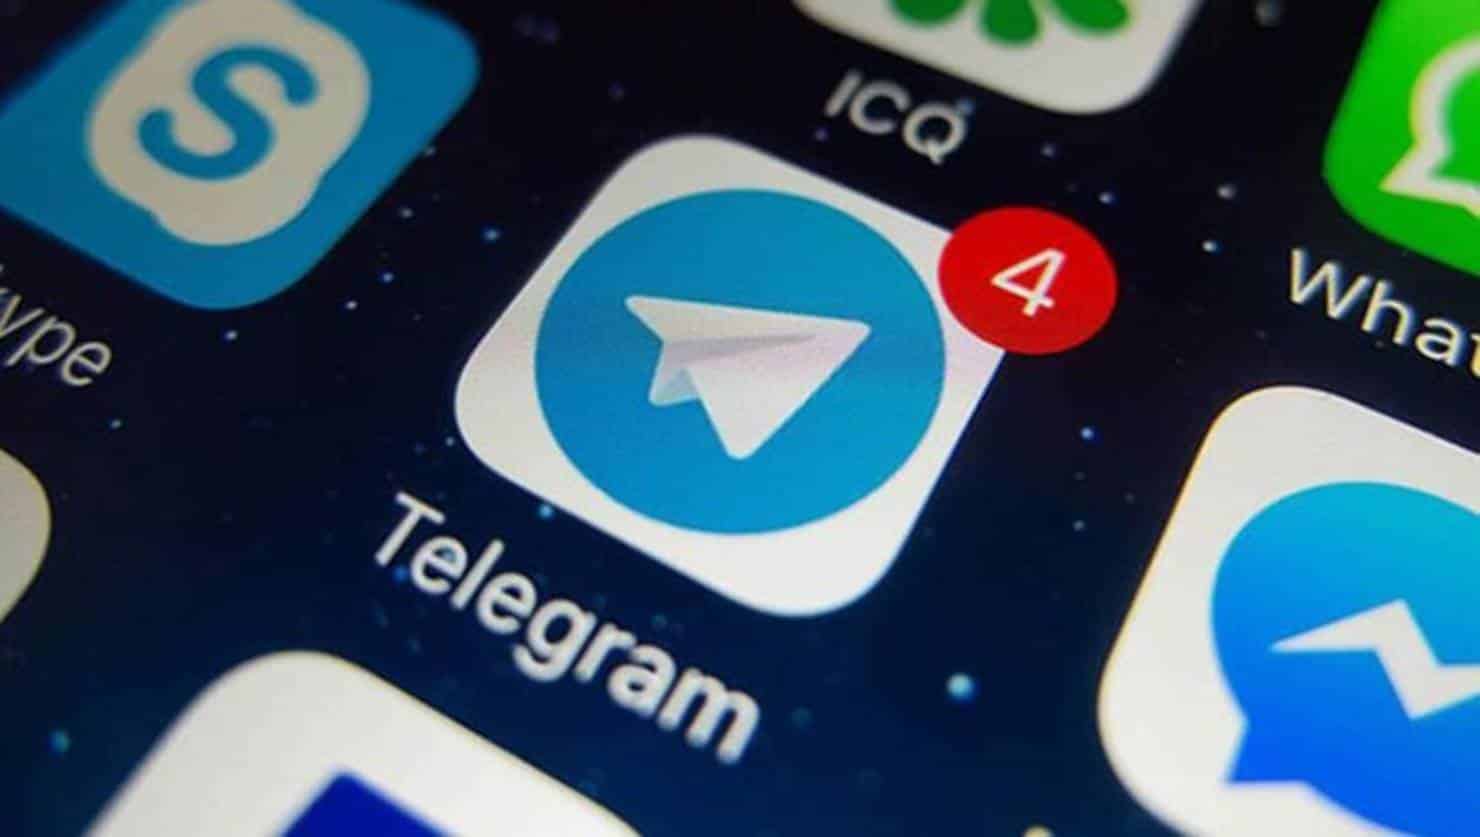 Telegram descumpre bloqueio de conta e recebe multa de R$ 1,2 milhão